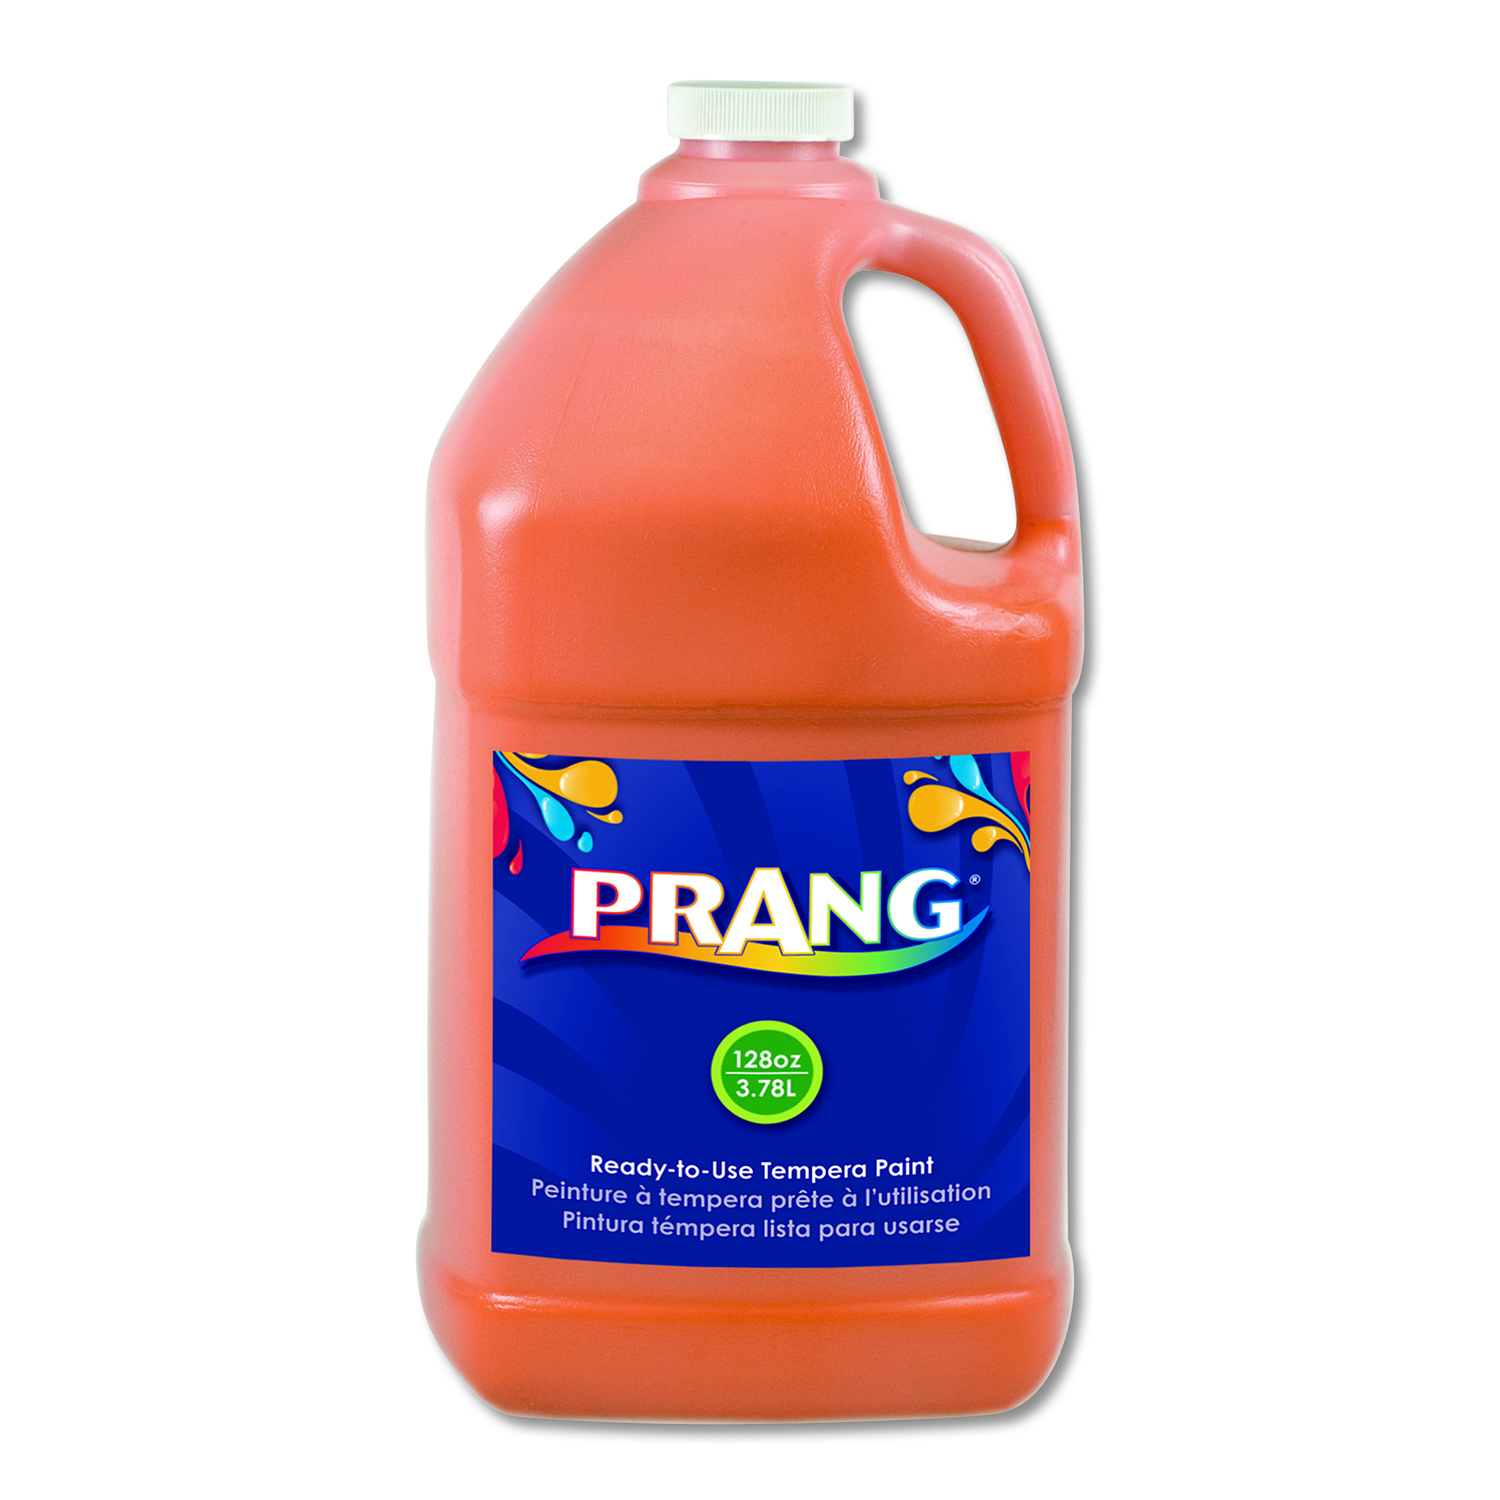  Prang 22802 Ready-to-Use Tempera Paint, Orange, 1 gal (DIX22802) 